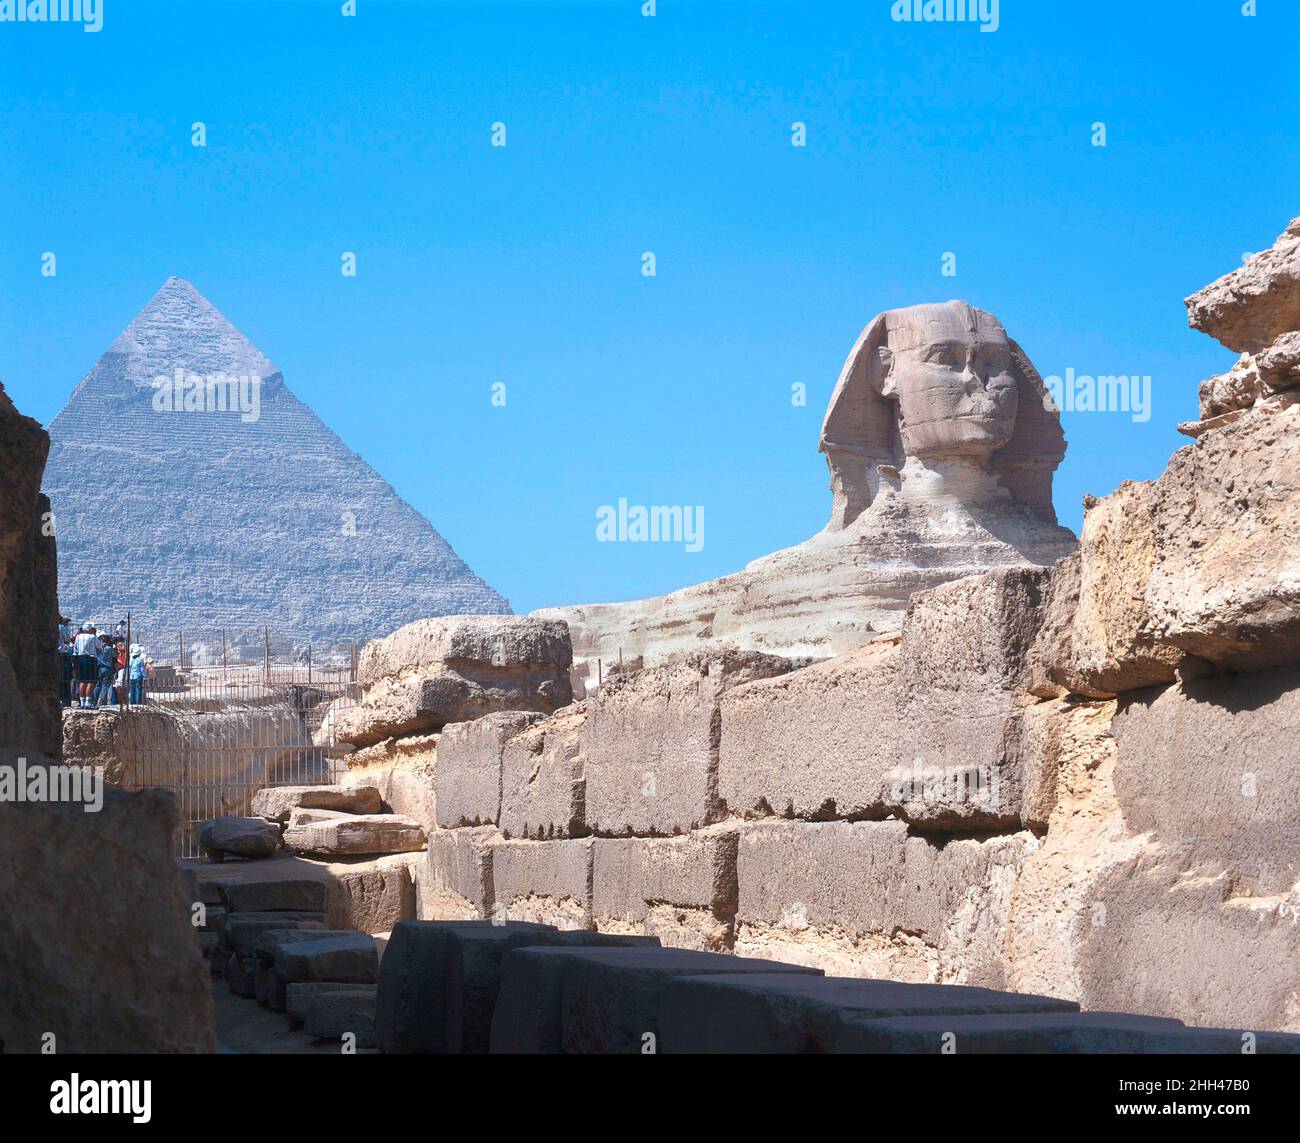 Sphinx and Pyramid of Khafre, Giza, Cairo, Egypt Stock Photo